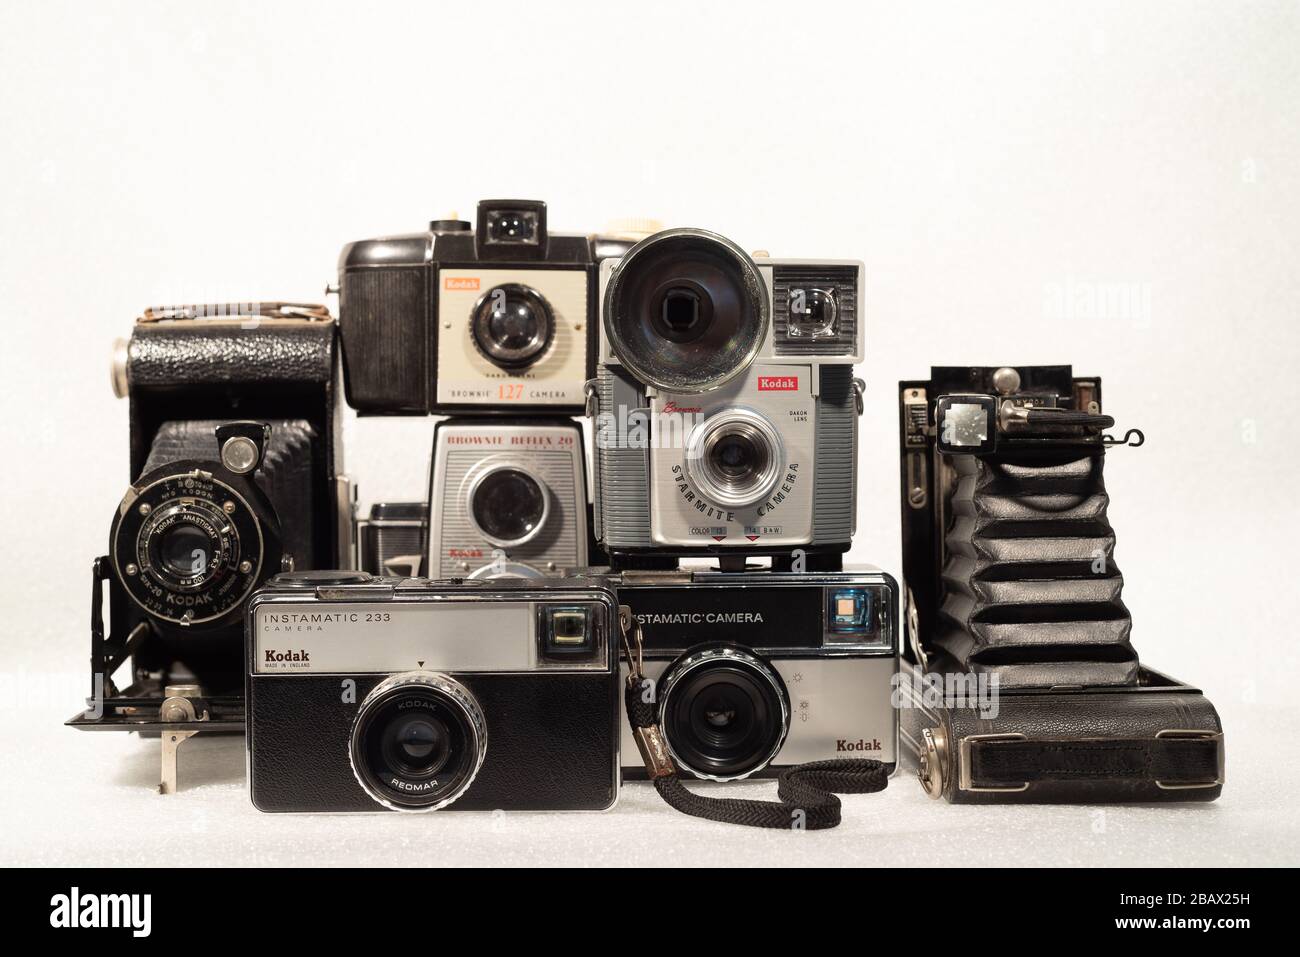 Fotocamere vintage. Raccolta di vecchie fotocamere Kodak analogiche Foto  stock - Alamy